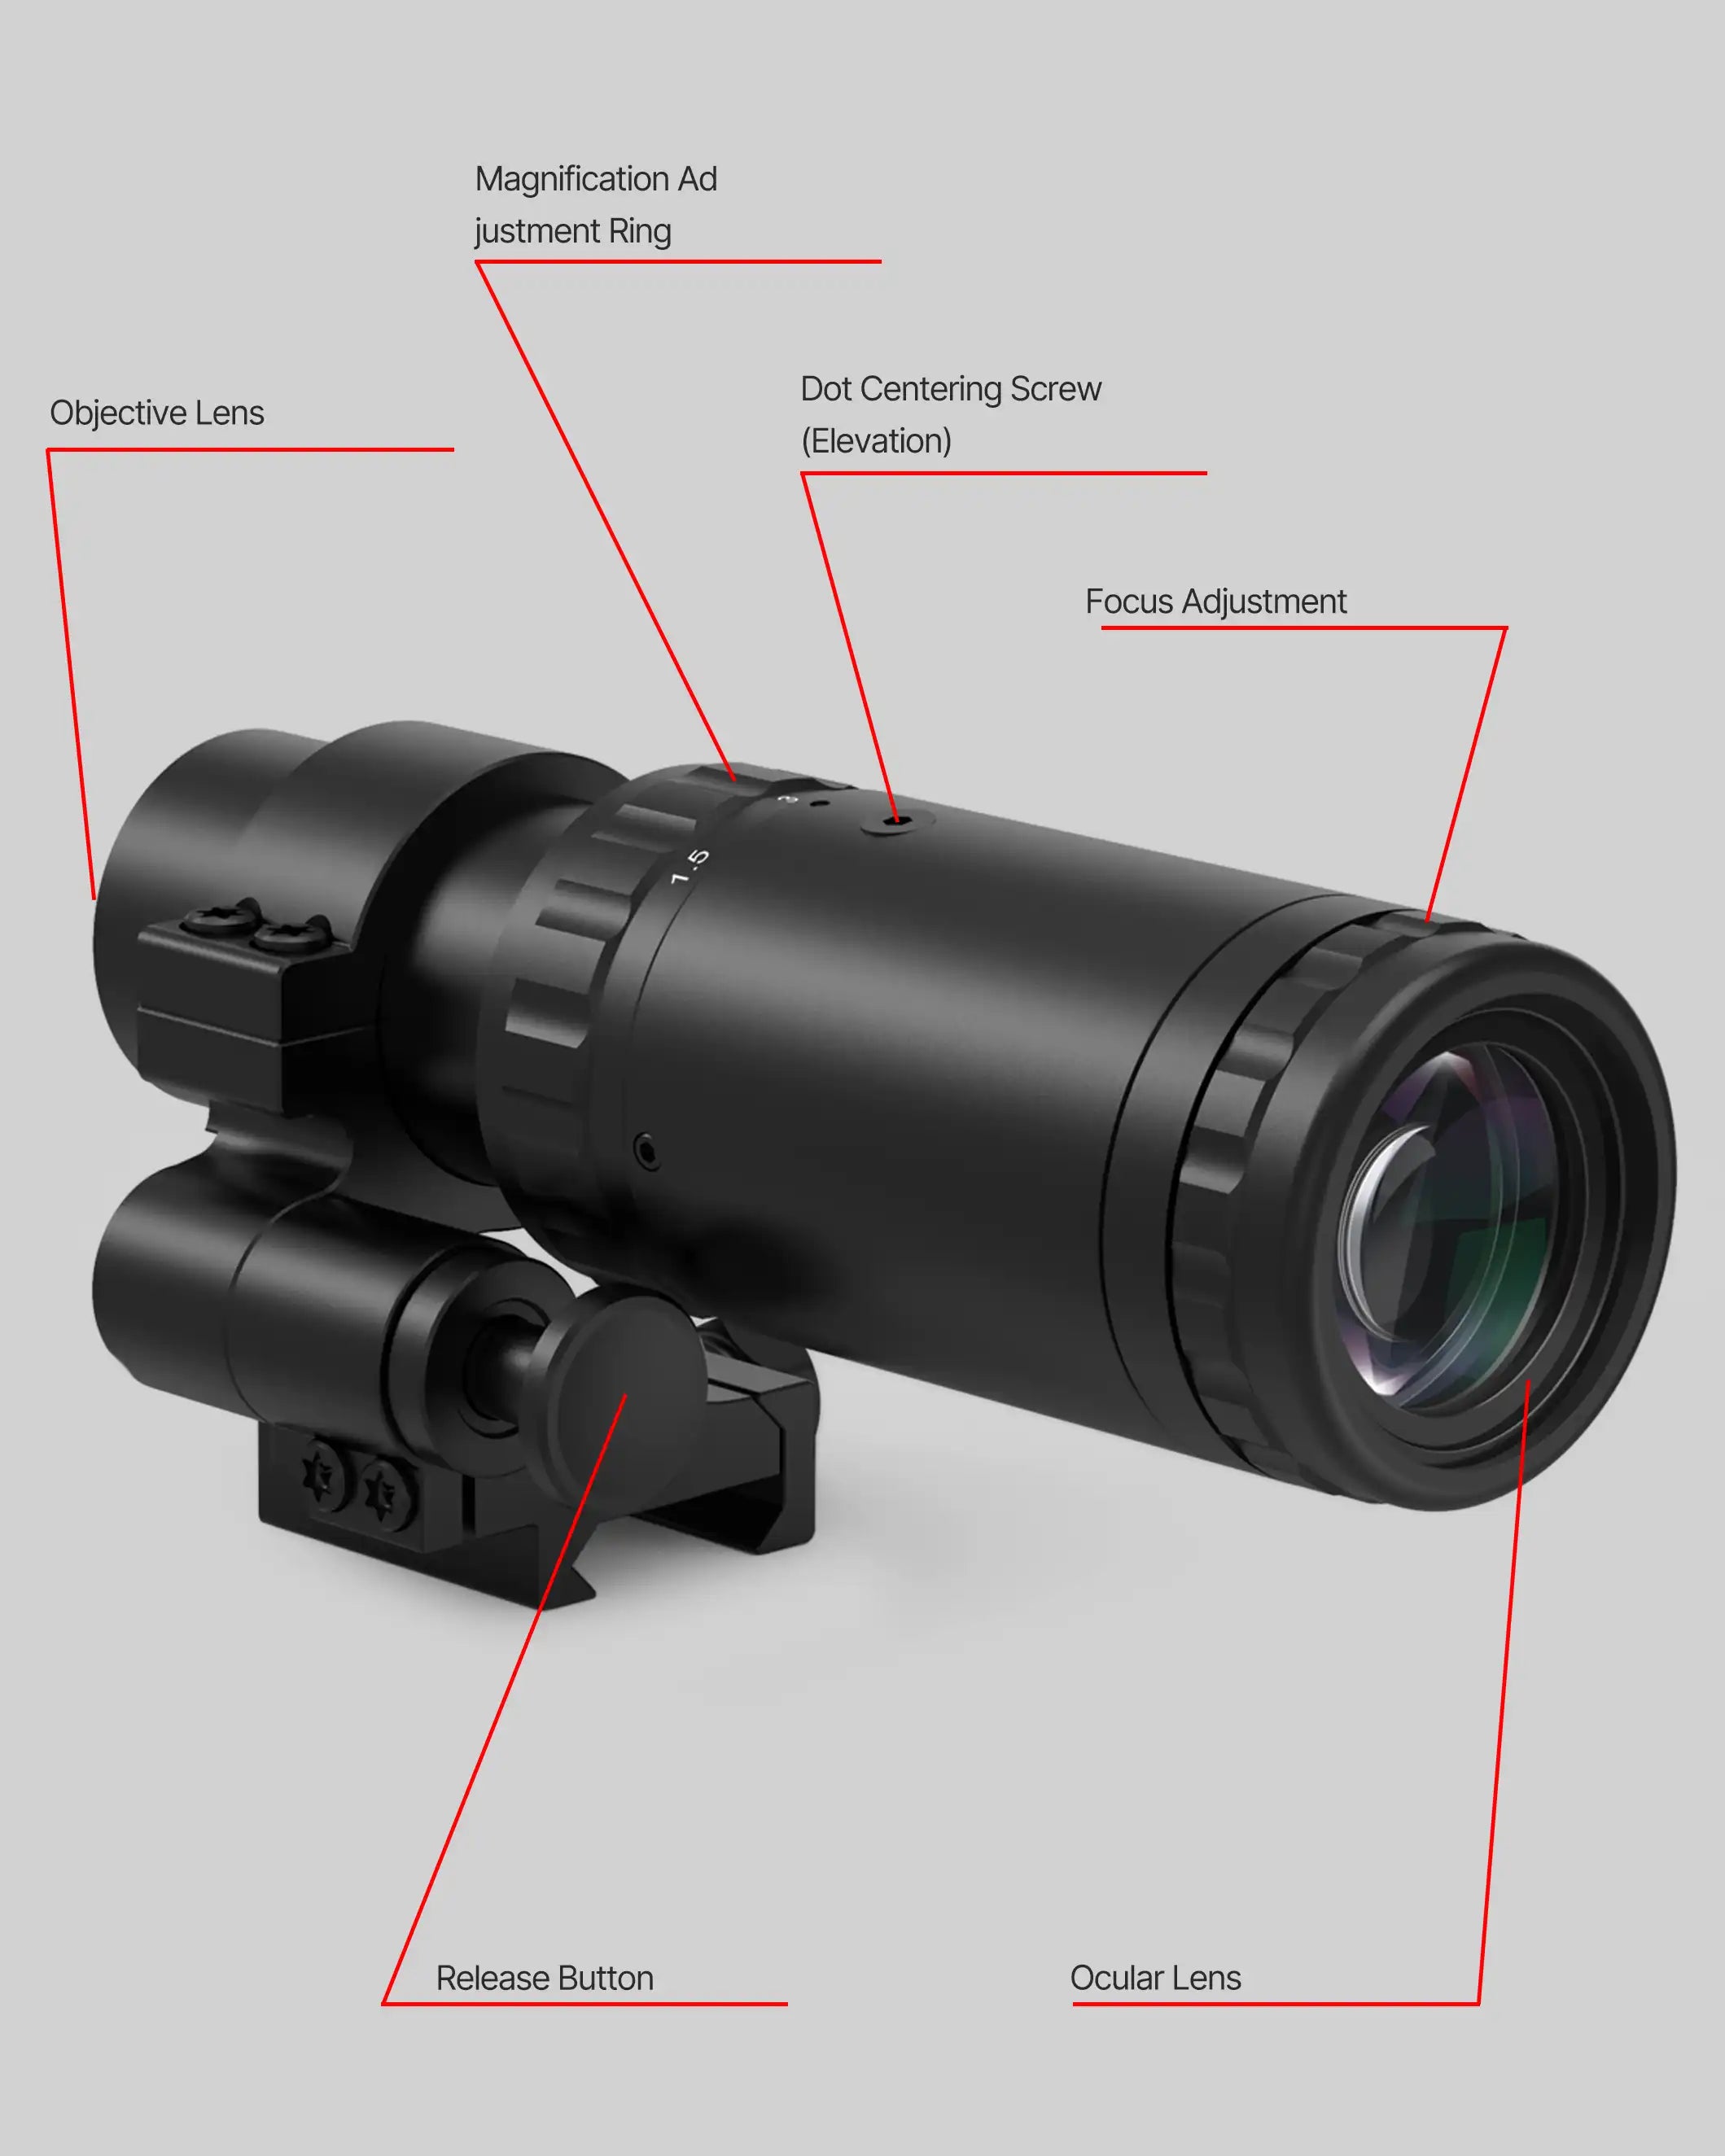 Feyachi M37&amp;RS-30 Red Dot Magnifier Combo - Reflexvisier und Klapphalterung